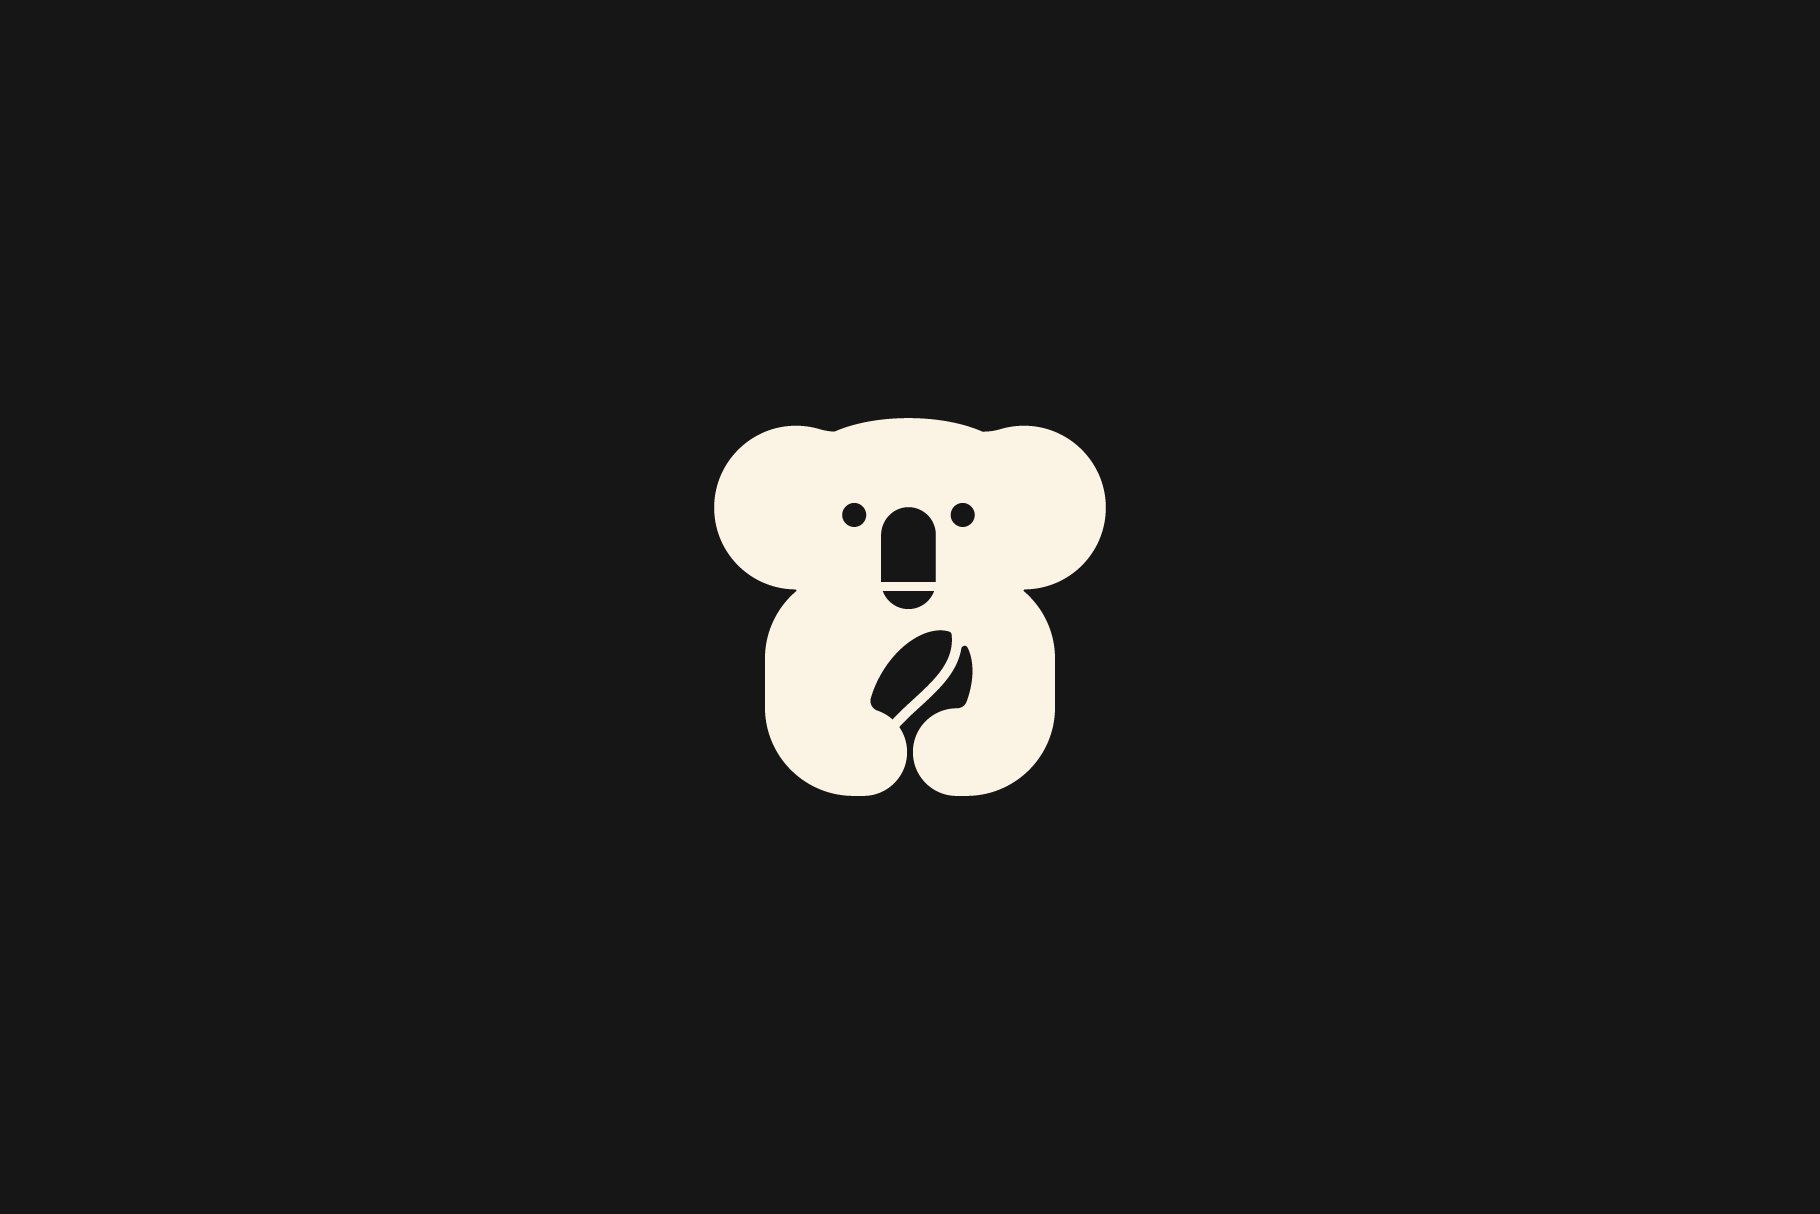 Koala coffee bean logo vector icon preview image.